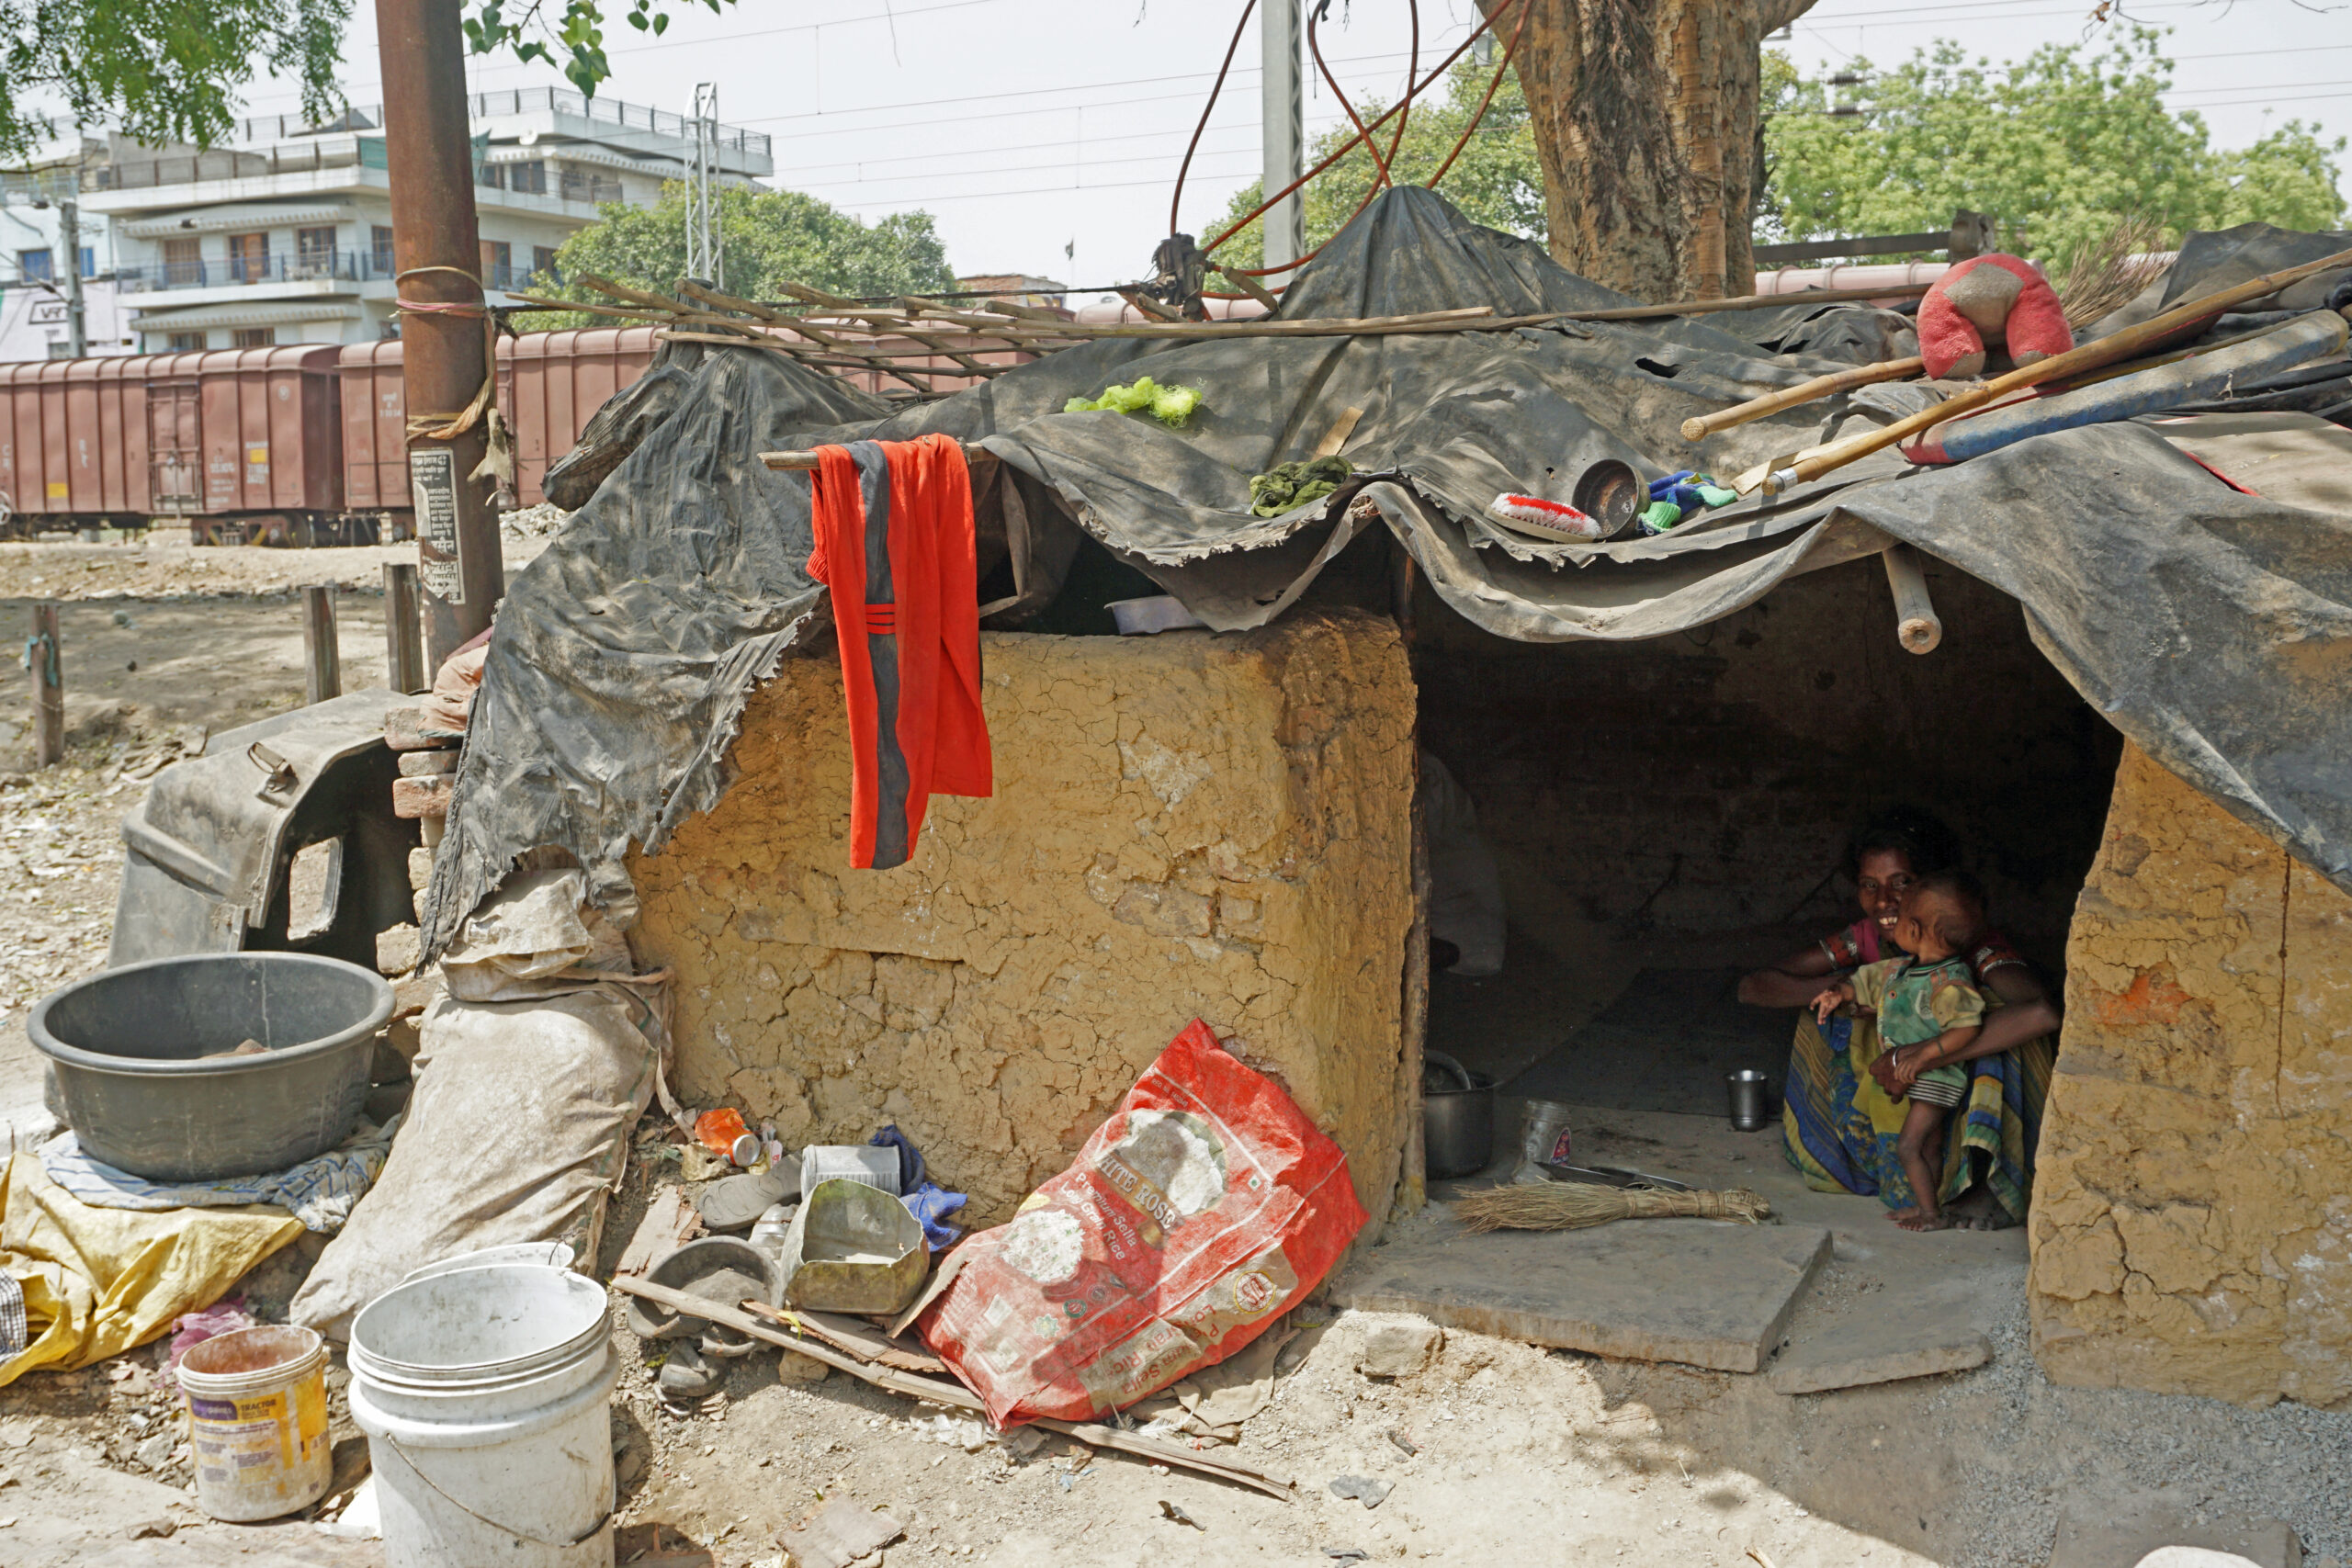 De nomadenfamilies wonen langs het spoor huisjes van afval